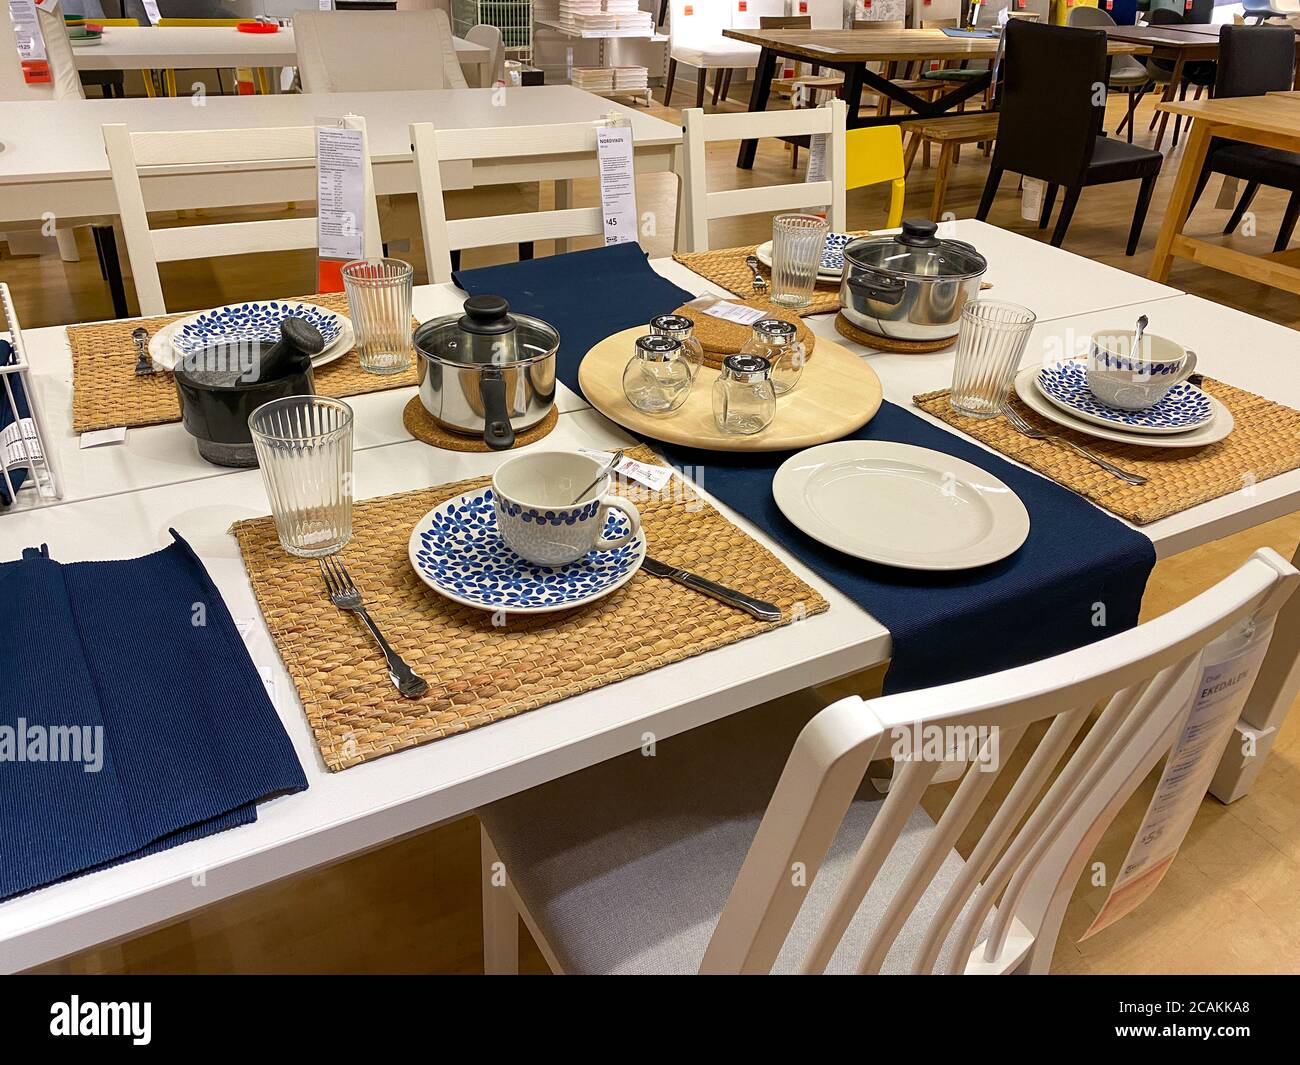 Orlando,FL/USA- 7/4/20: Une table de salle à manger avec des plats et des couverts dans un magasin IKEA à Orlando, Floride. Banque D'Images